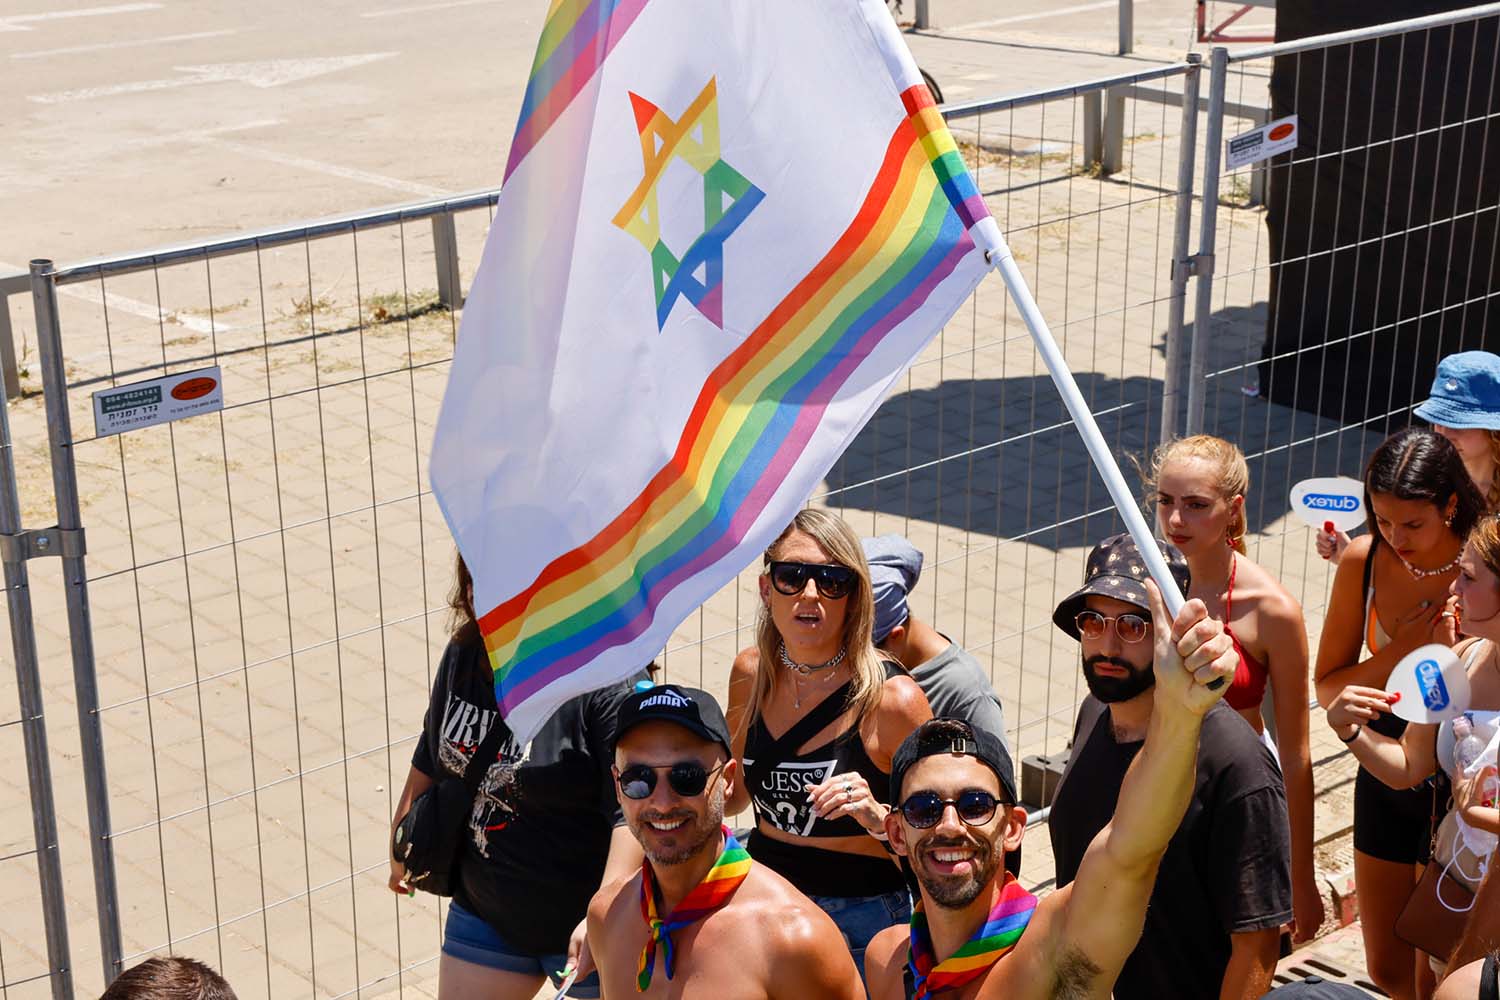 Scenes from Tel Aviv Pride